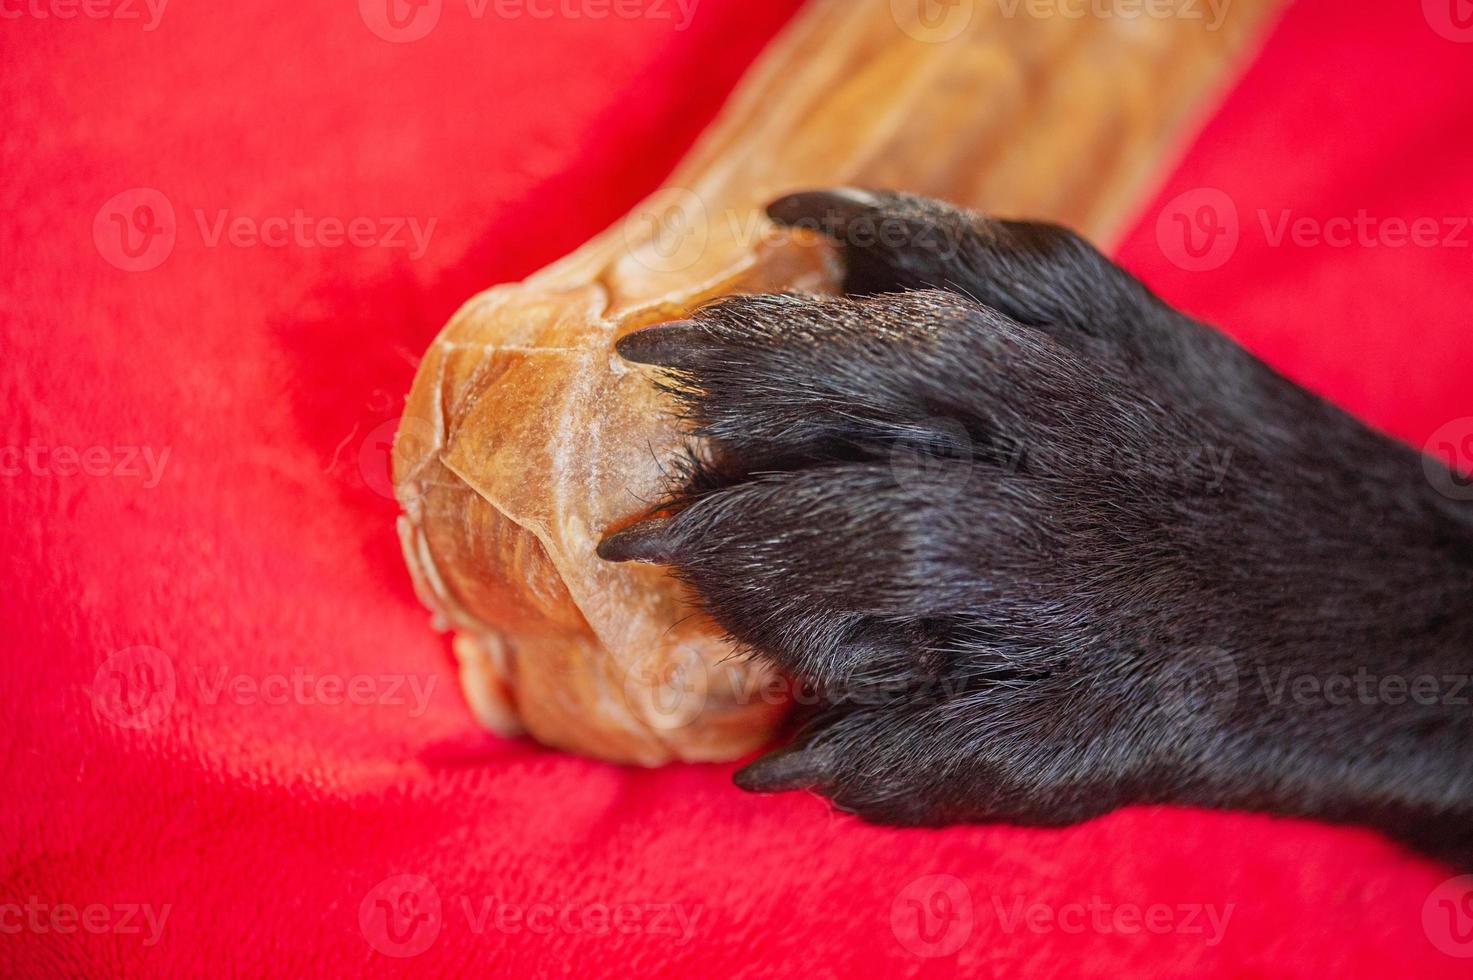 la patte d'un chien noir sur un os. photo macro des pattes d'un labrador retriever sur une couverture rouge.